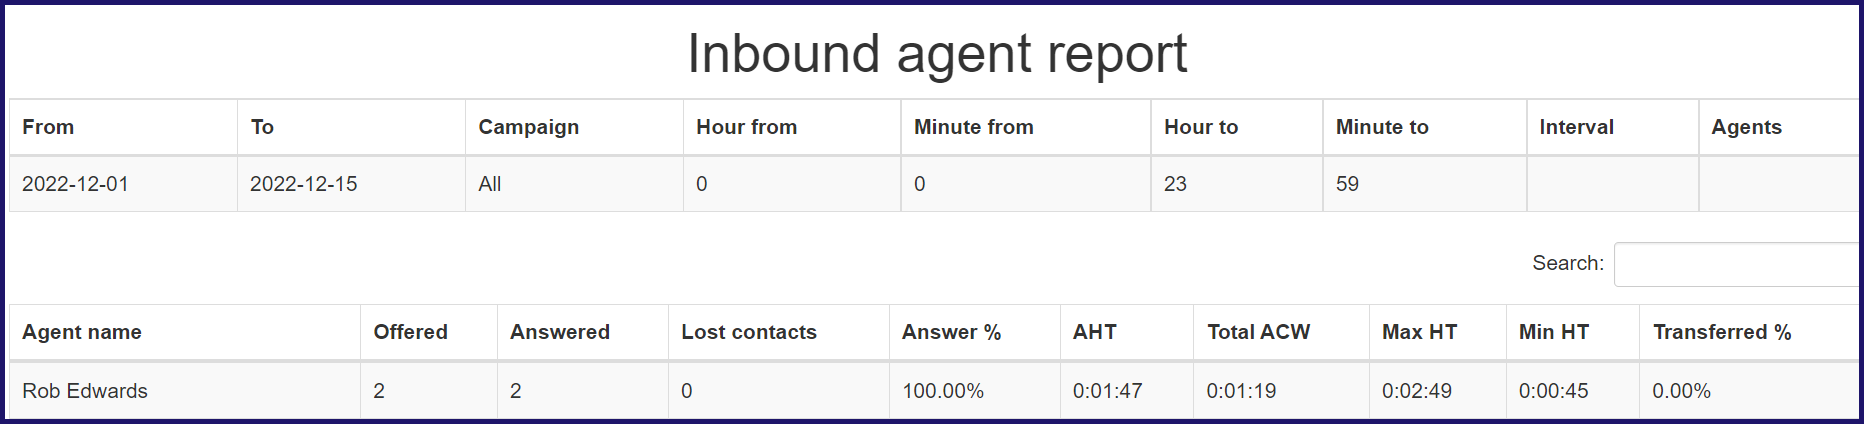 Inbound_agent_report.png